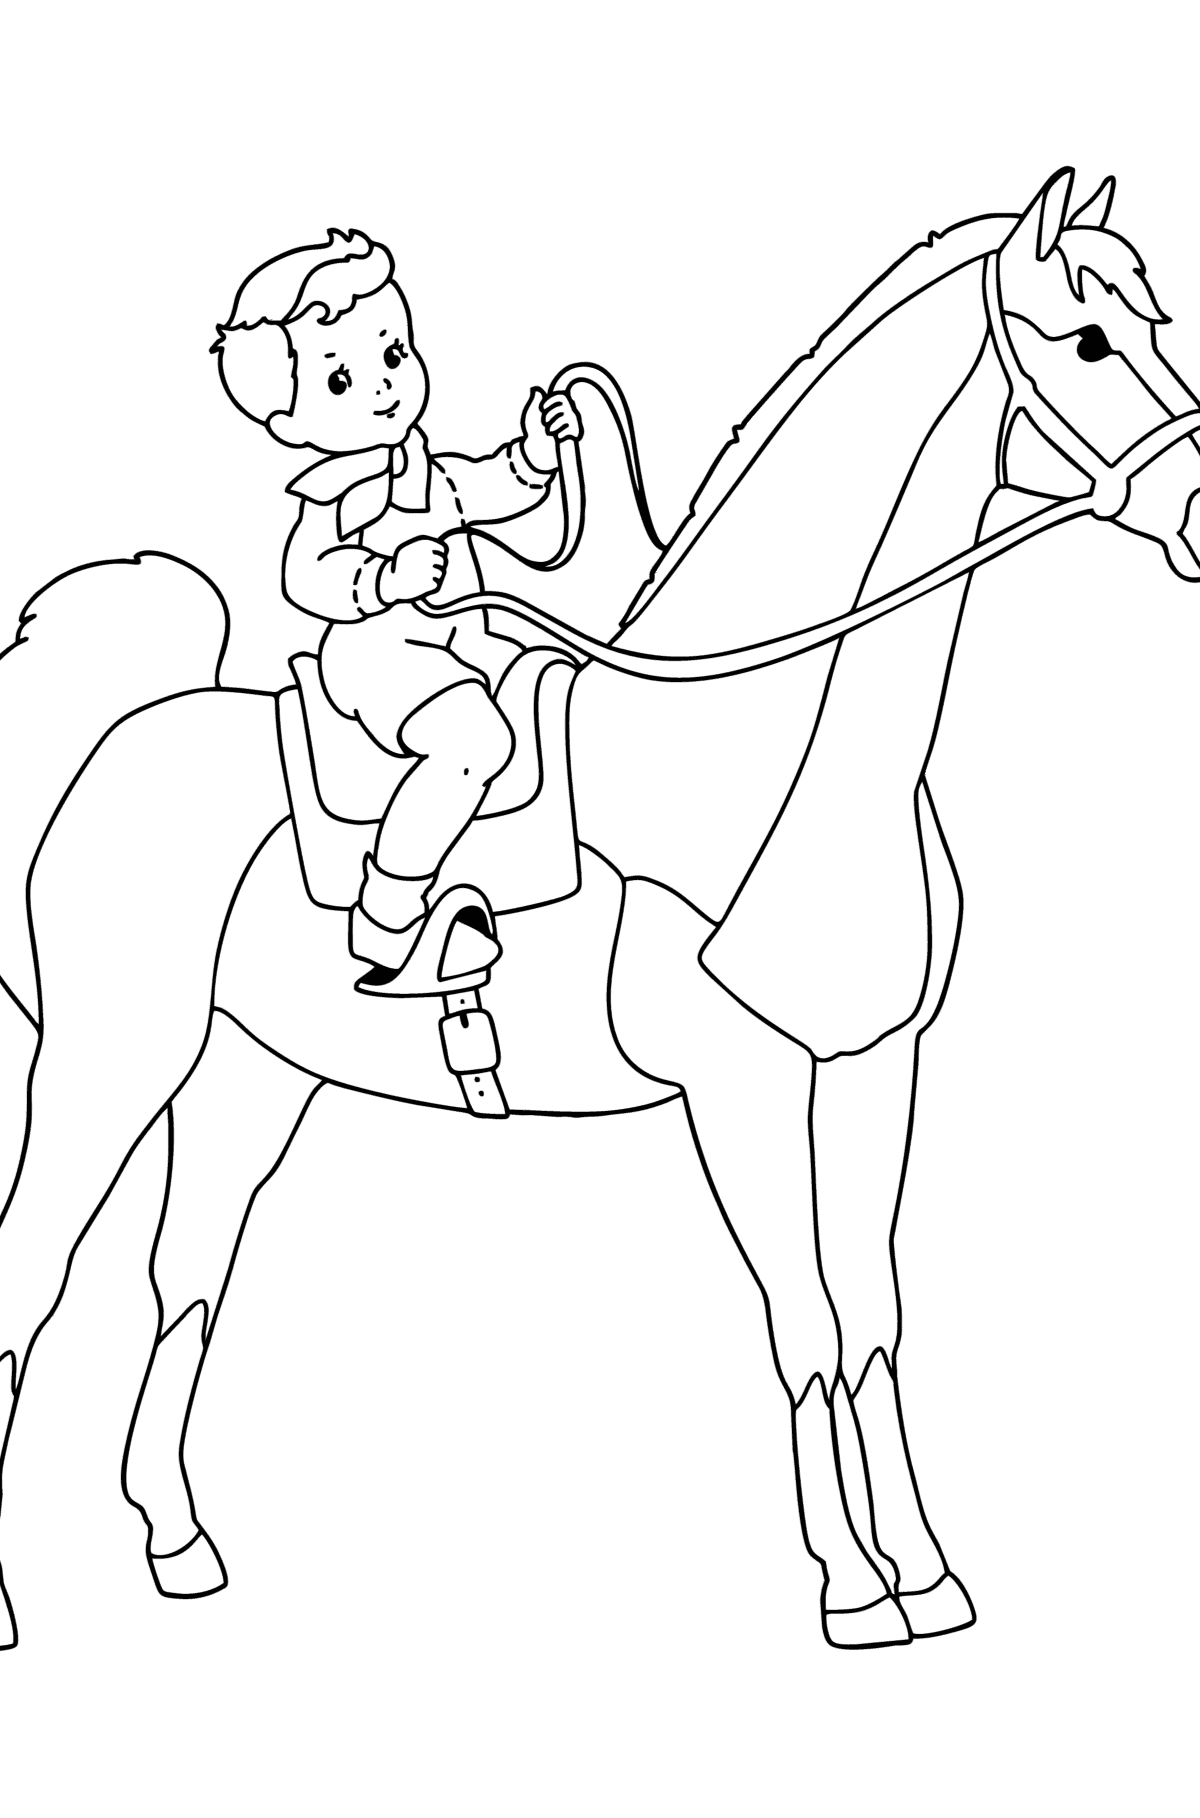 Tegning til fargelegging Gutt på hest - Tegninger til fargelegging for barn